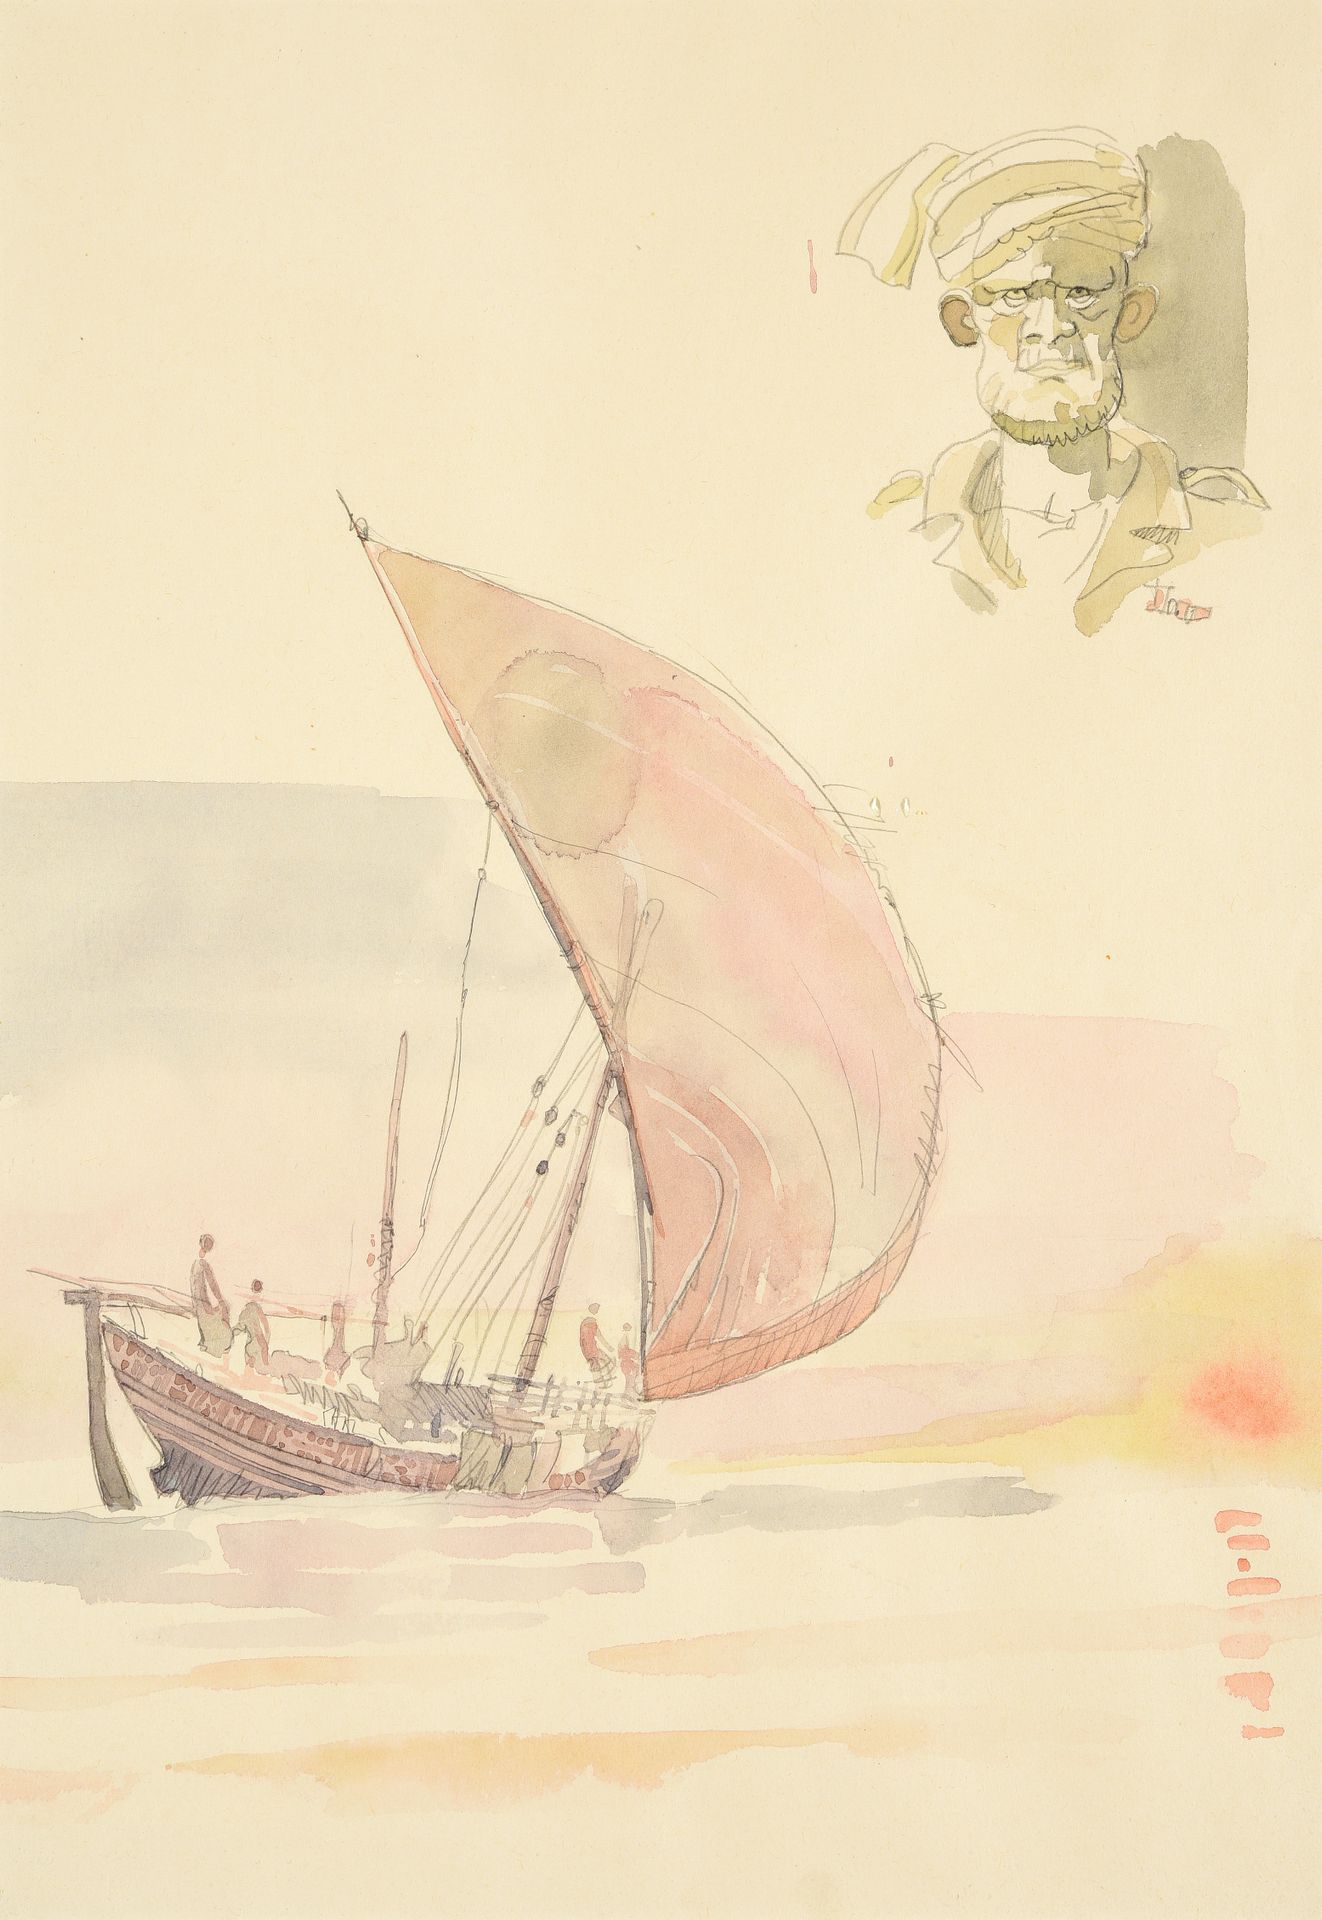 Null 胡戈-普拉特 (1927-1995)

追随科尔托的脚步

纸上石墨和水彩画

32.50 x 22.50 厘米



出处

私人收藏，摩纳哥